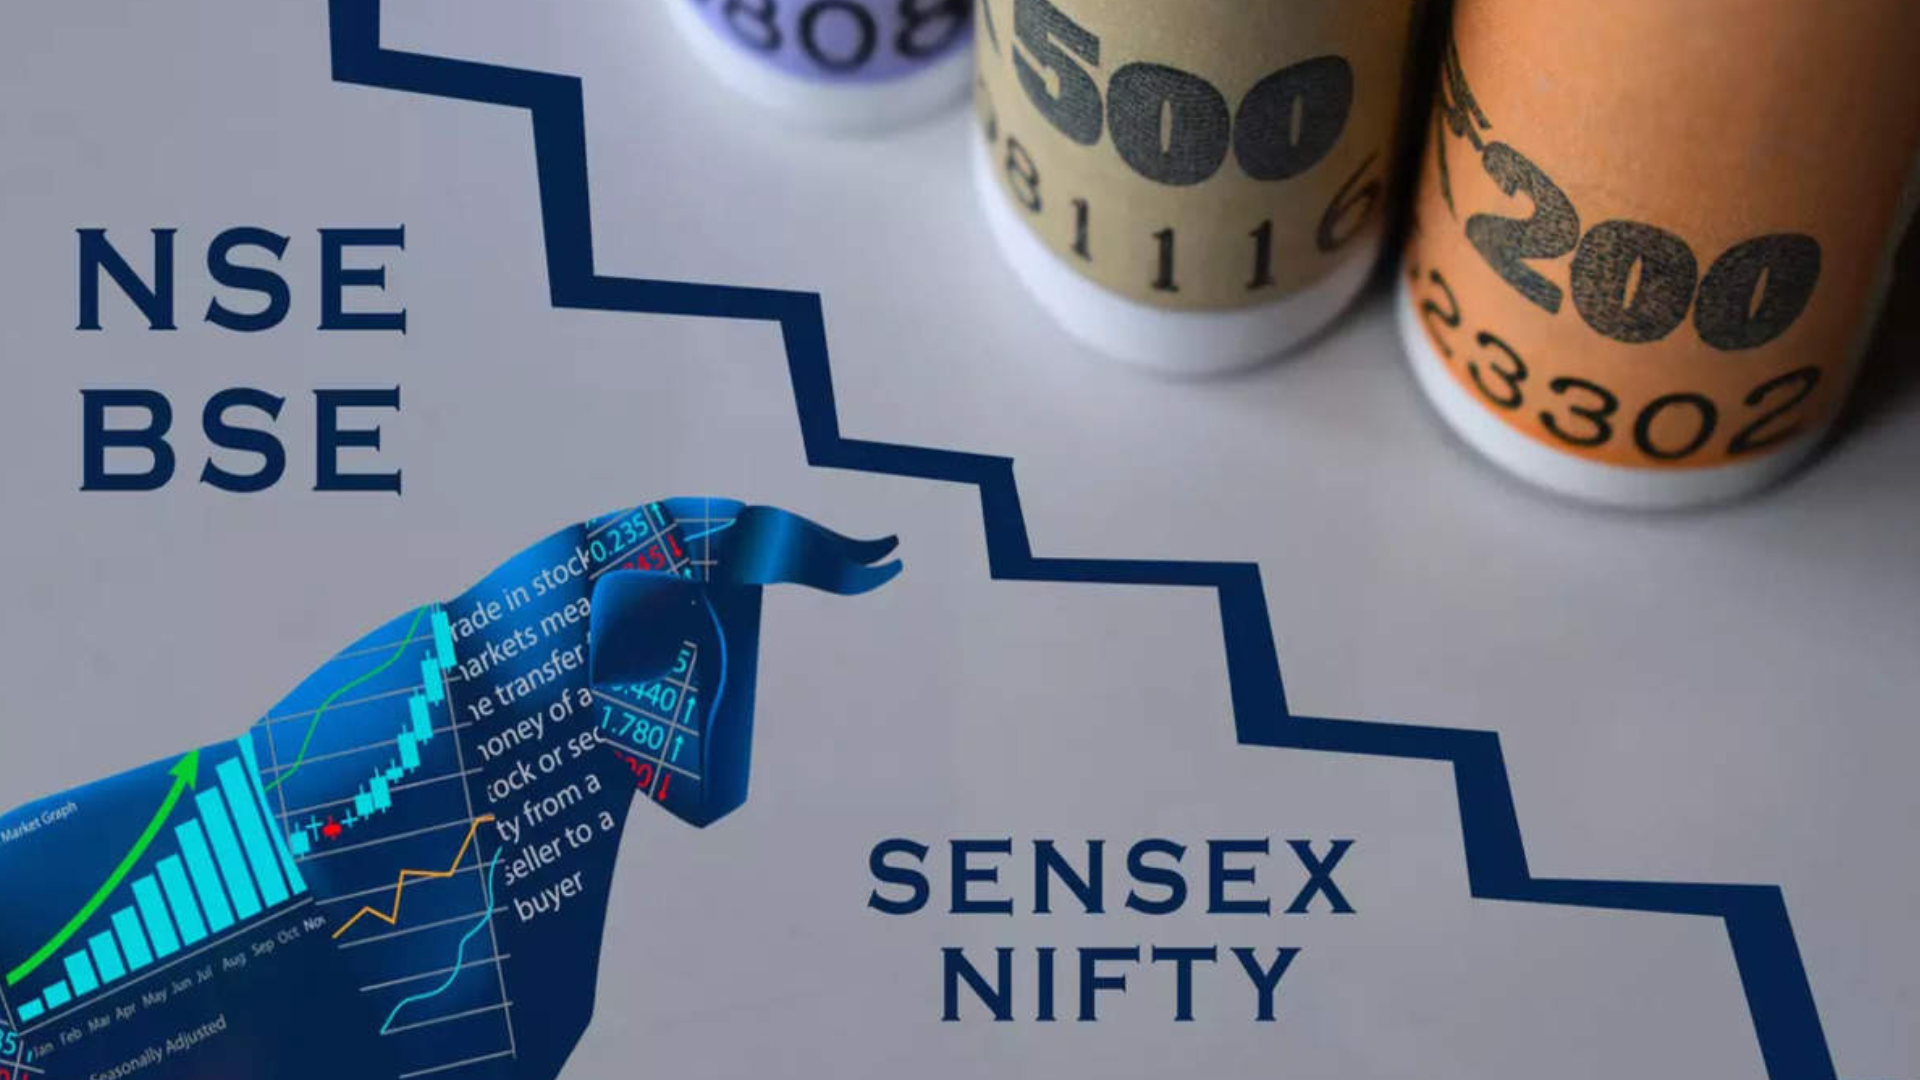 Sensex Plummets 1000+, Nifty Drops 200: Stock Market in Turmoil